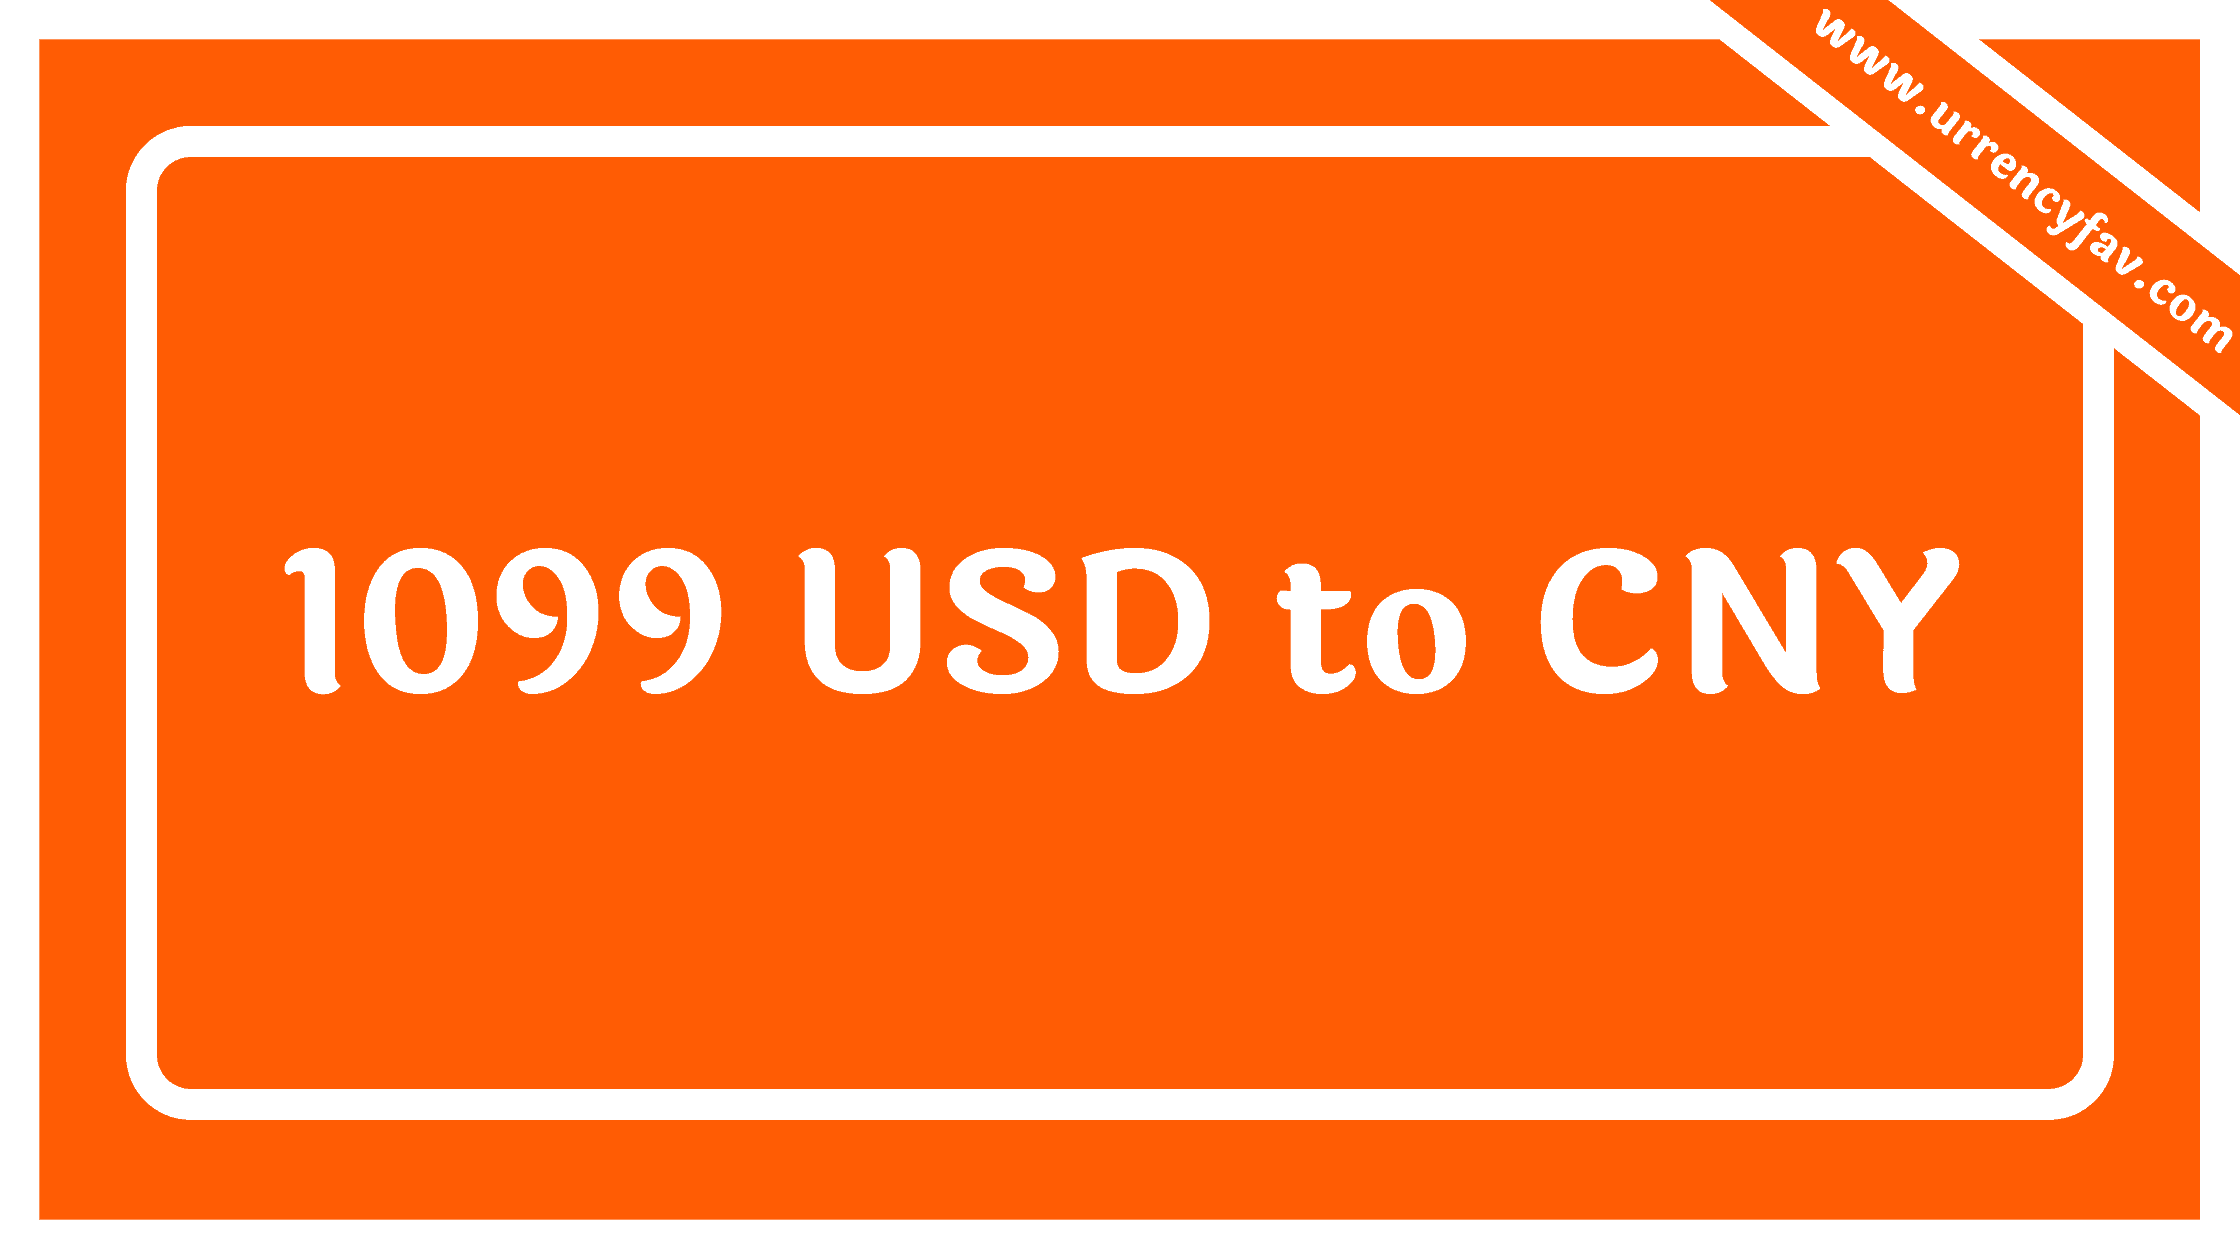 1099 USD to CNY